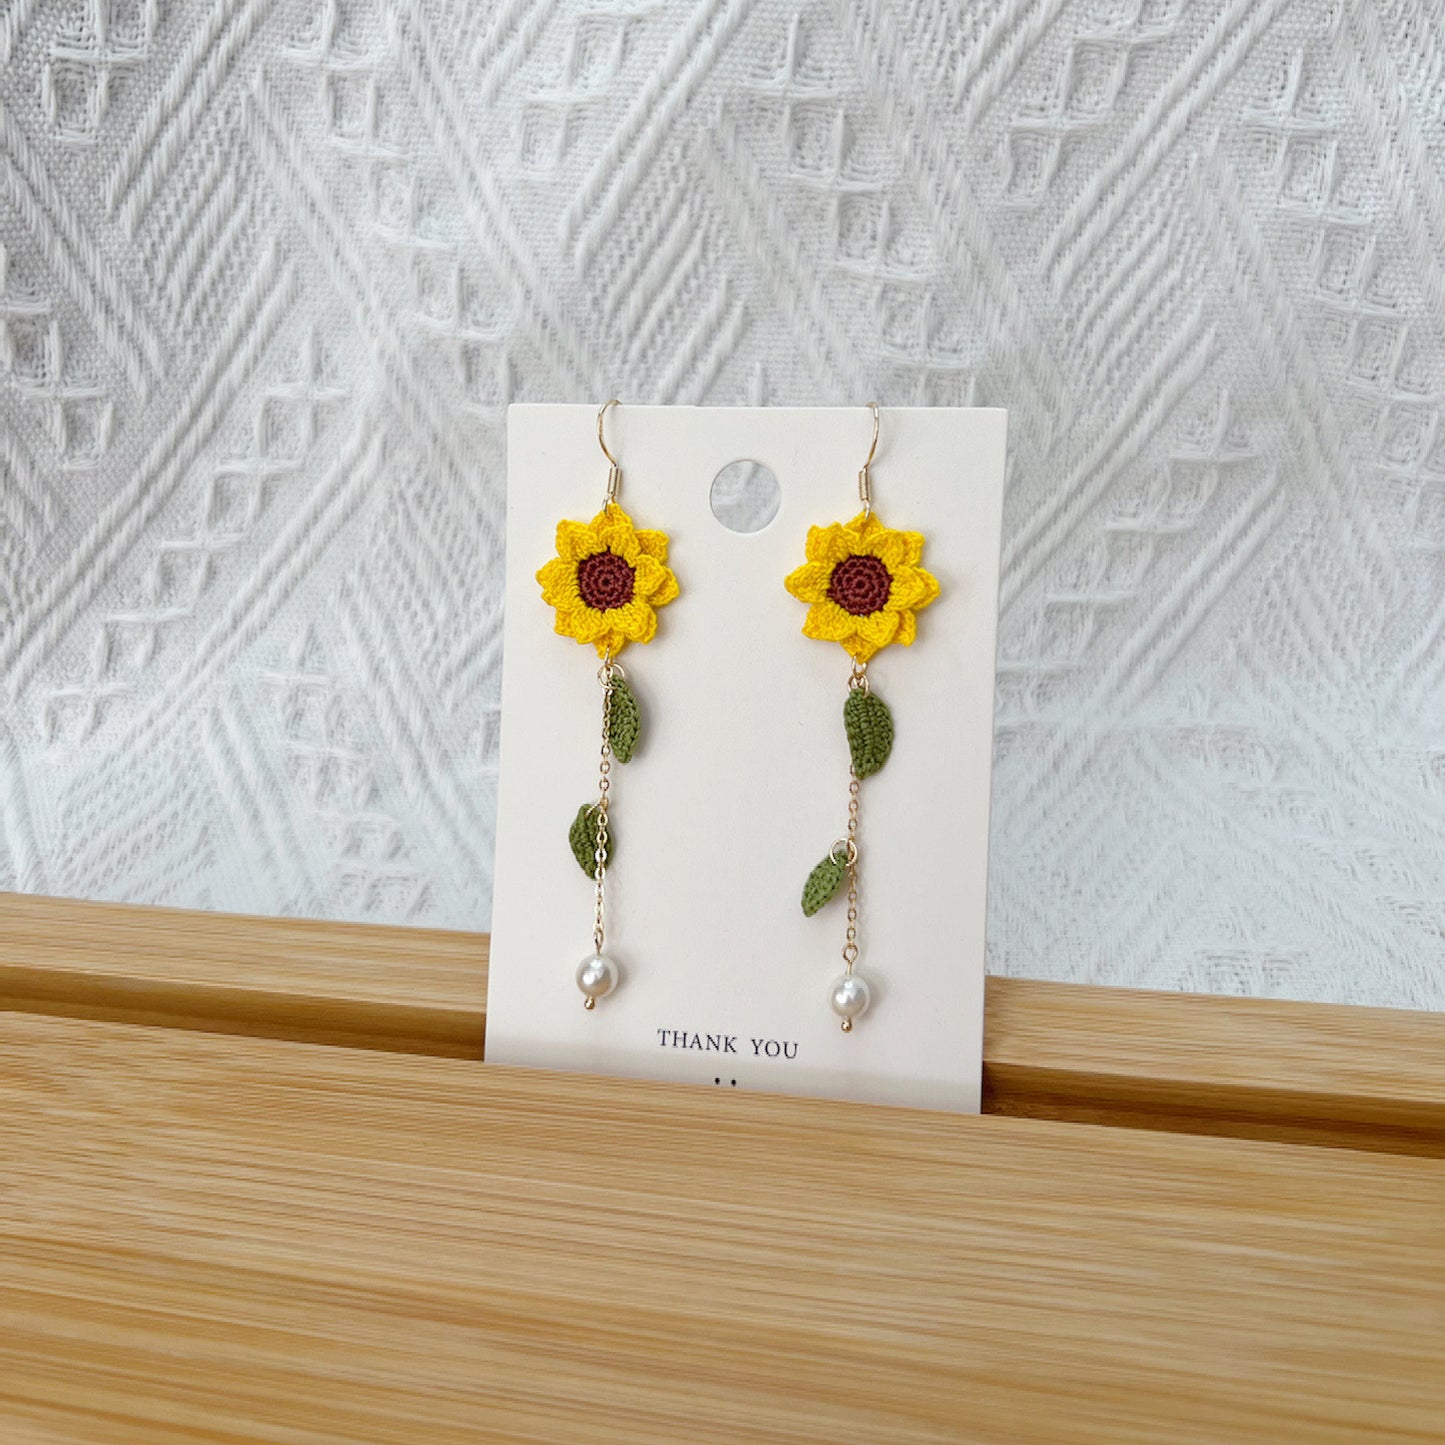 Micro Crochet Sunflower Earrings | Sunflower Dangling Earrings | Sunflower Drop Earrings | Sunflower Dangle Earrings | Handmade Sunflower Earrings